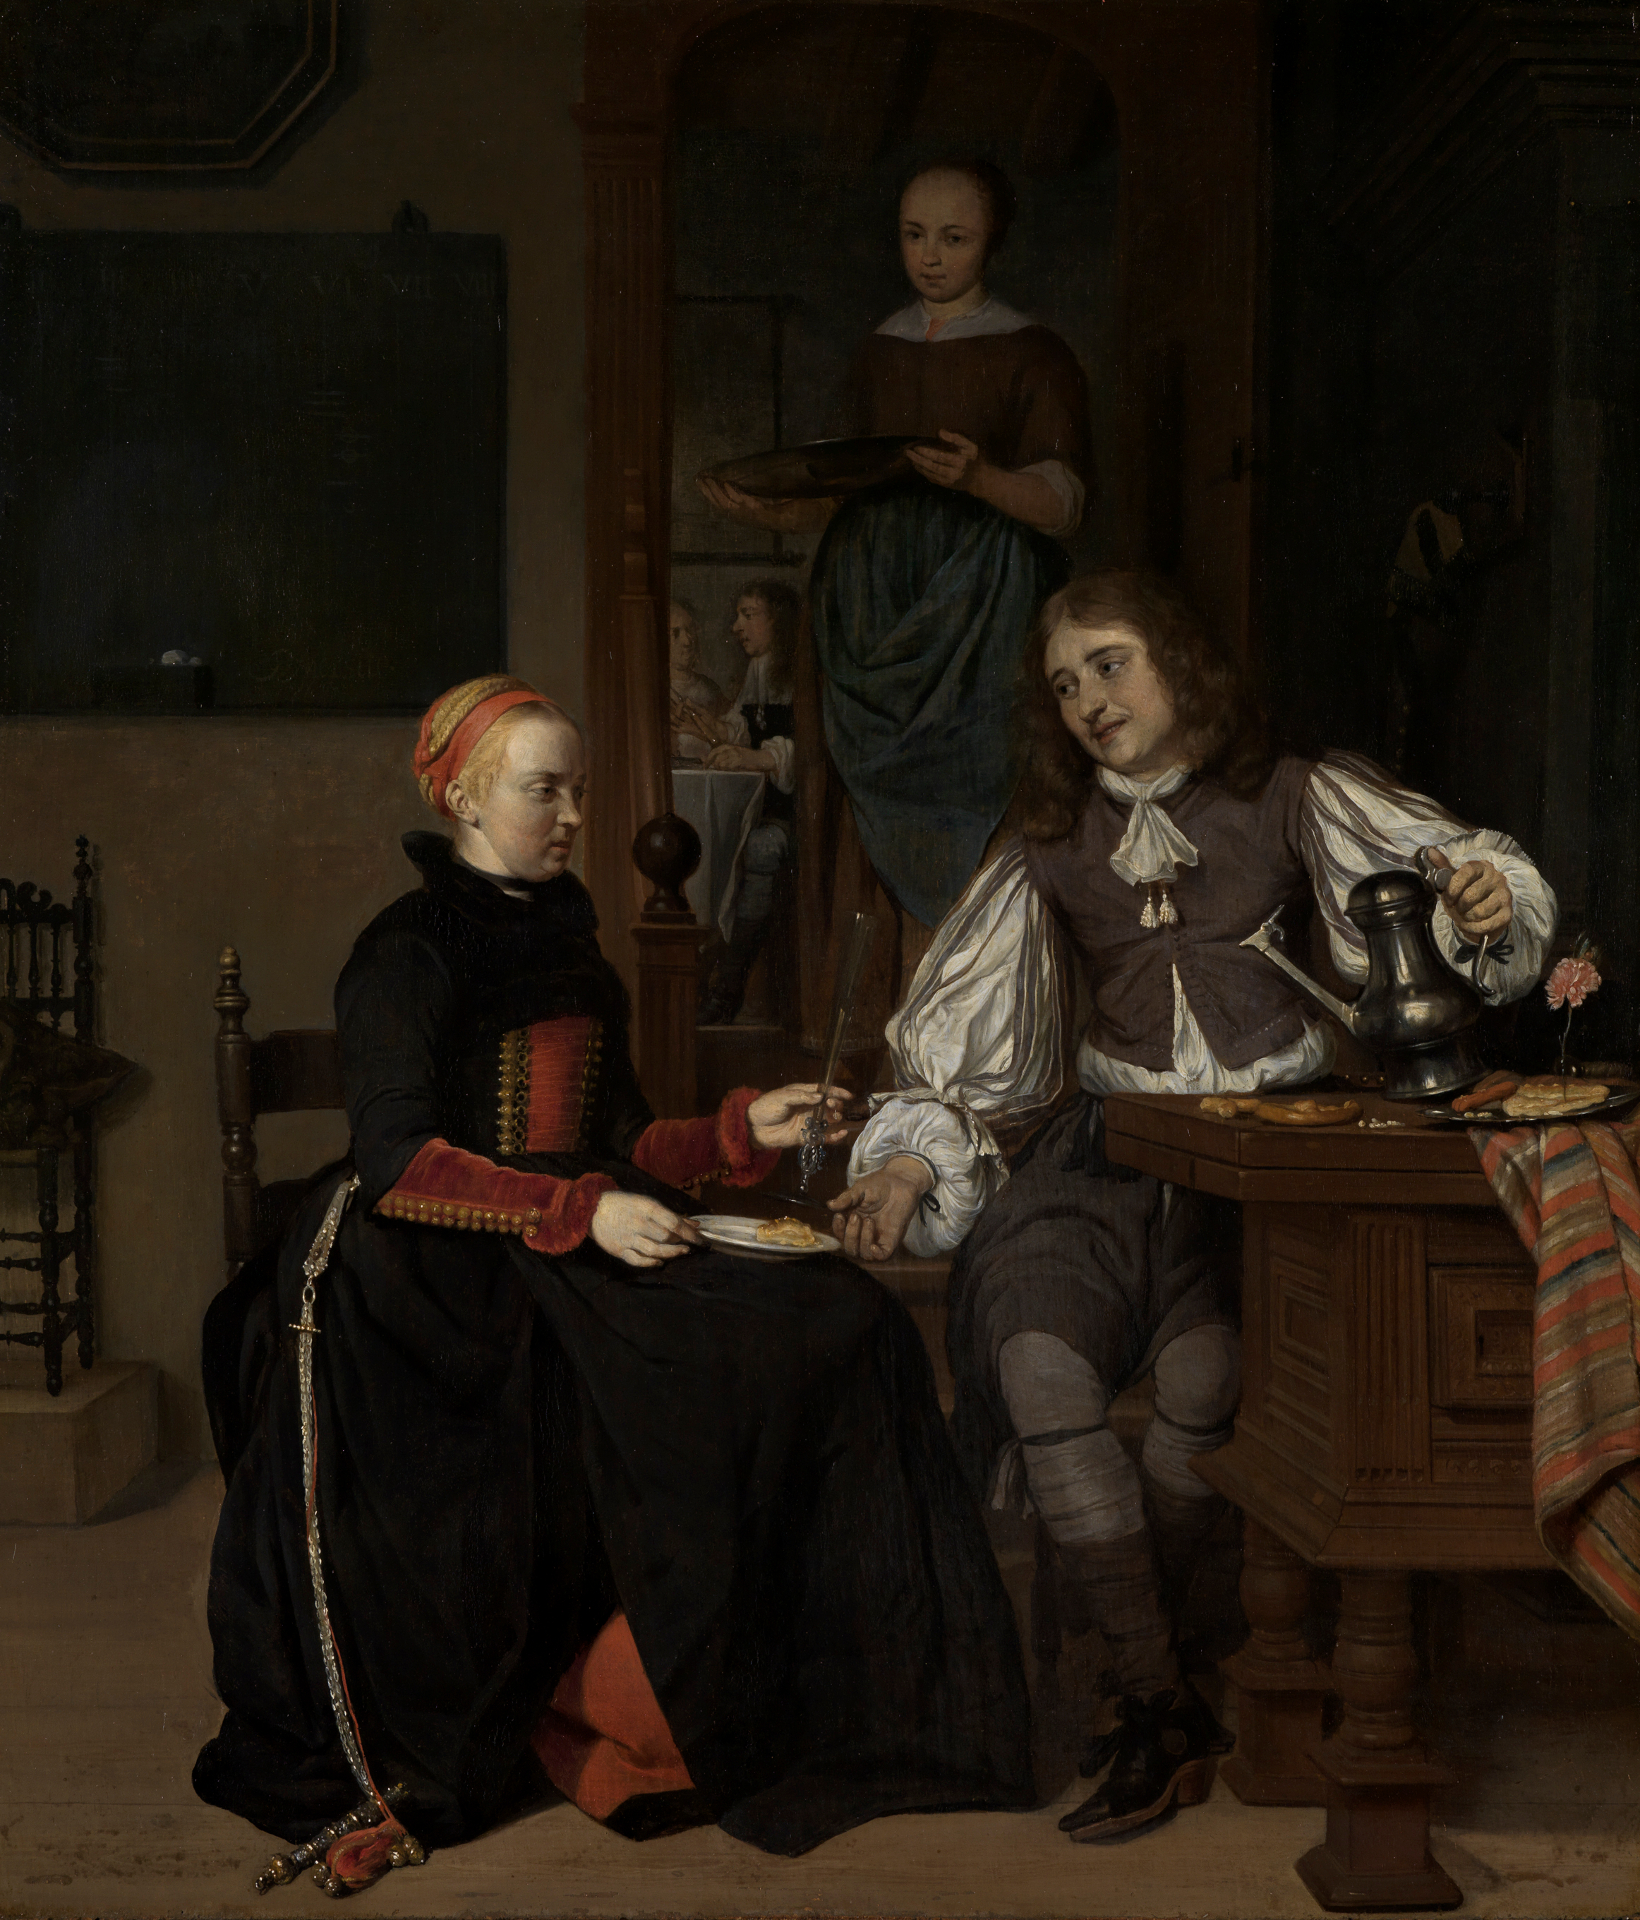 Gabriel Metsus Gemälde Junges Paar beim Frühstück. Es zeigt eine junge Frau und einen jungen Mann an einem Tisch sitzend. Im Hintergrund ist eine Frau mit einem Tablett zu sehen.